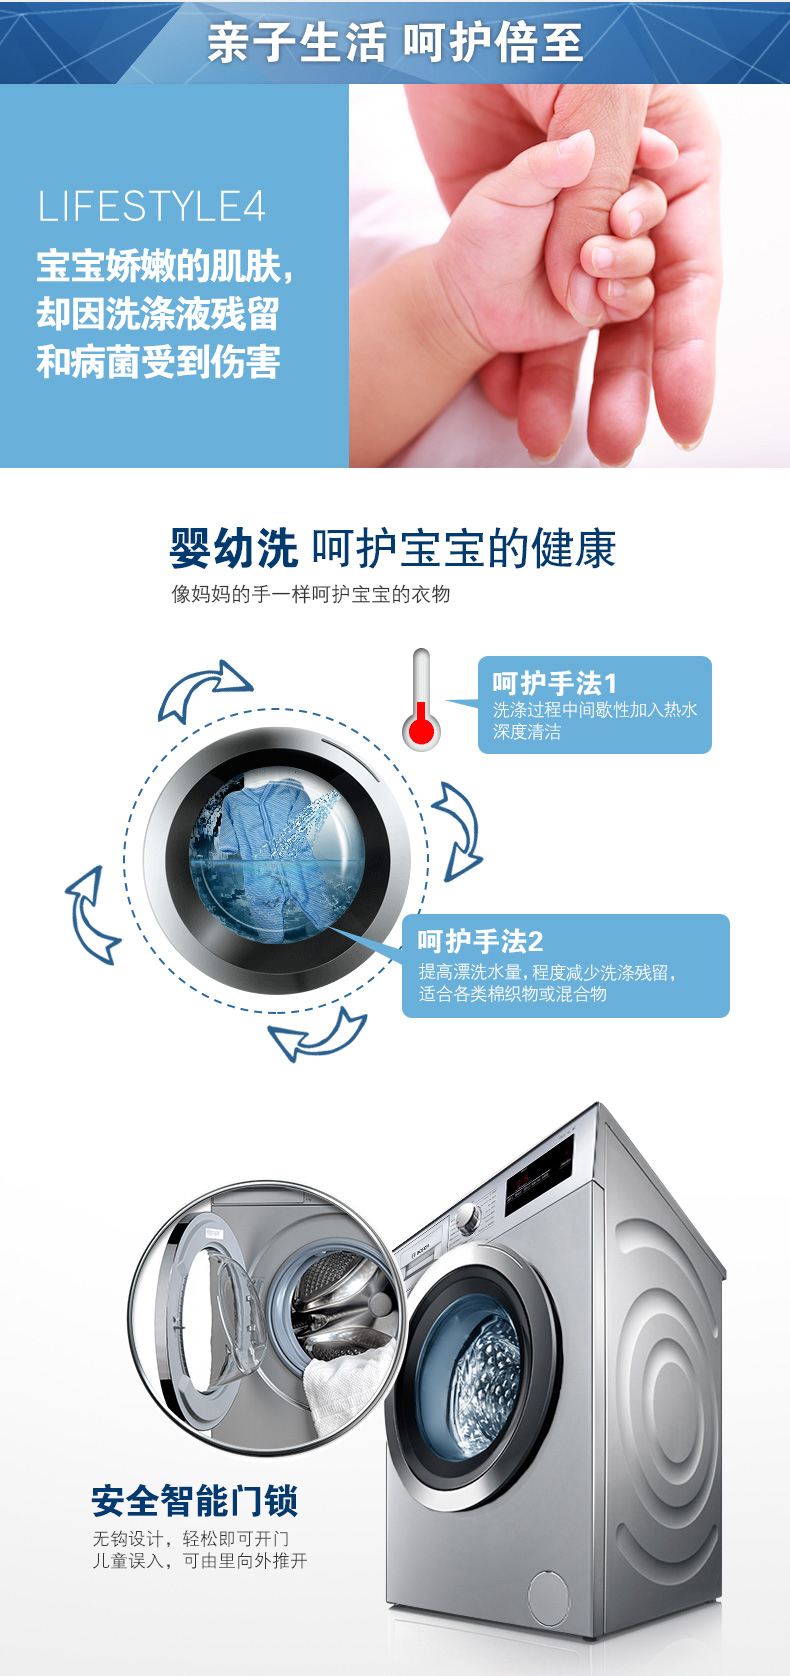 博世洗衣机XQG80-WAN201680W